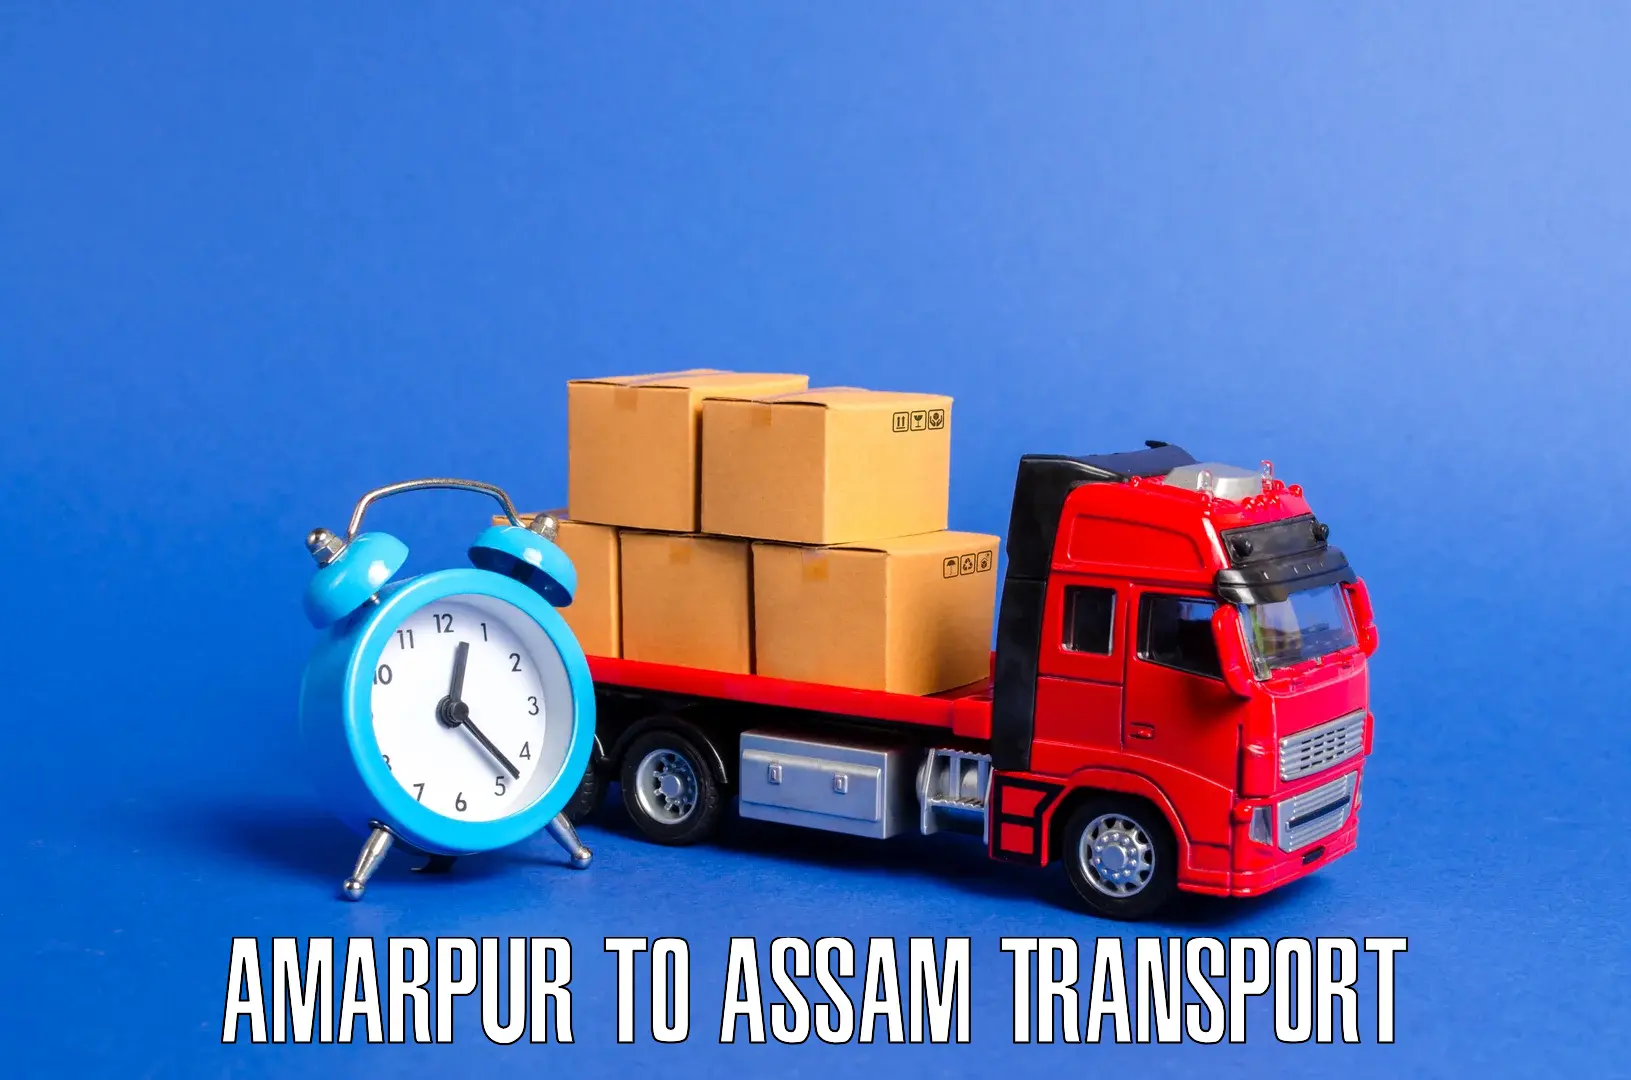 Furniture transport service Amarpur to Kokrajhar